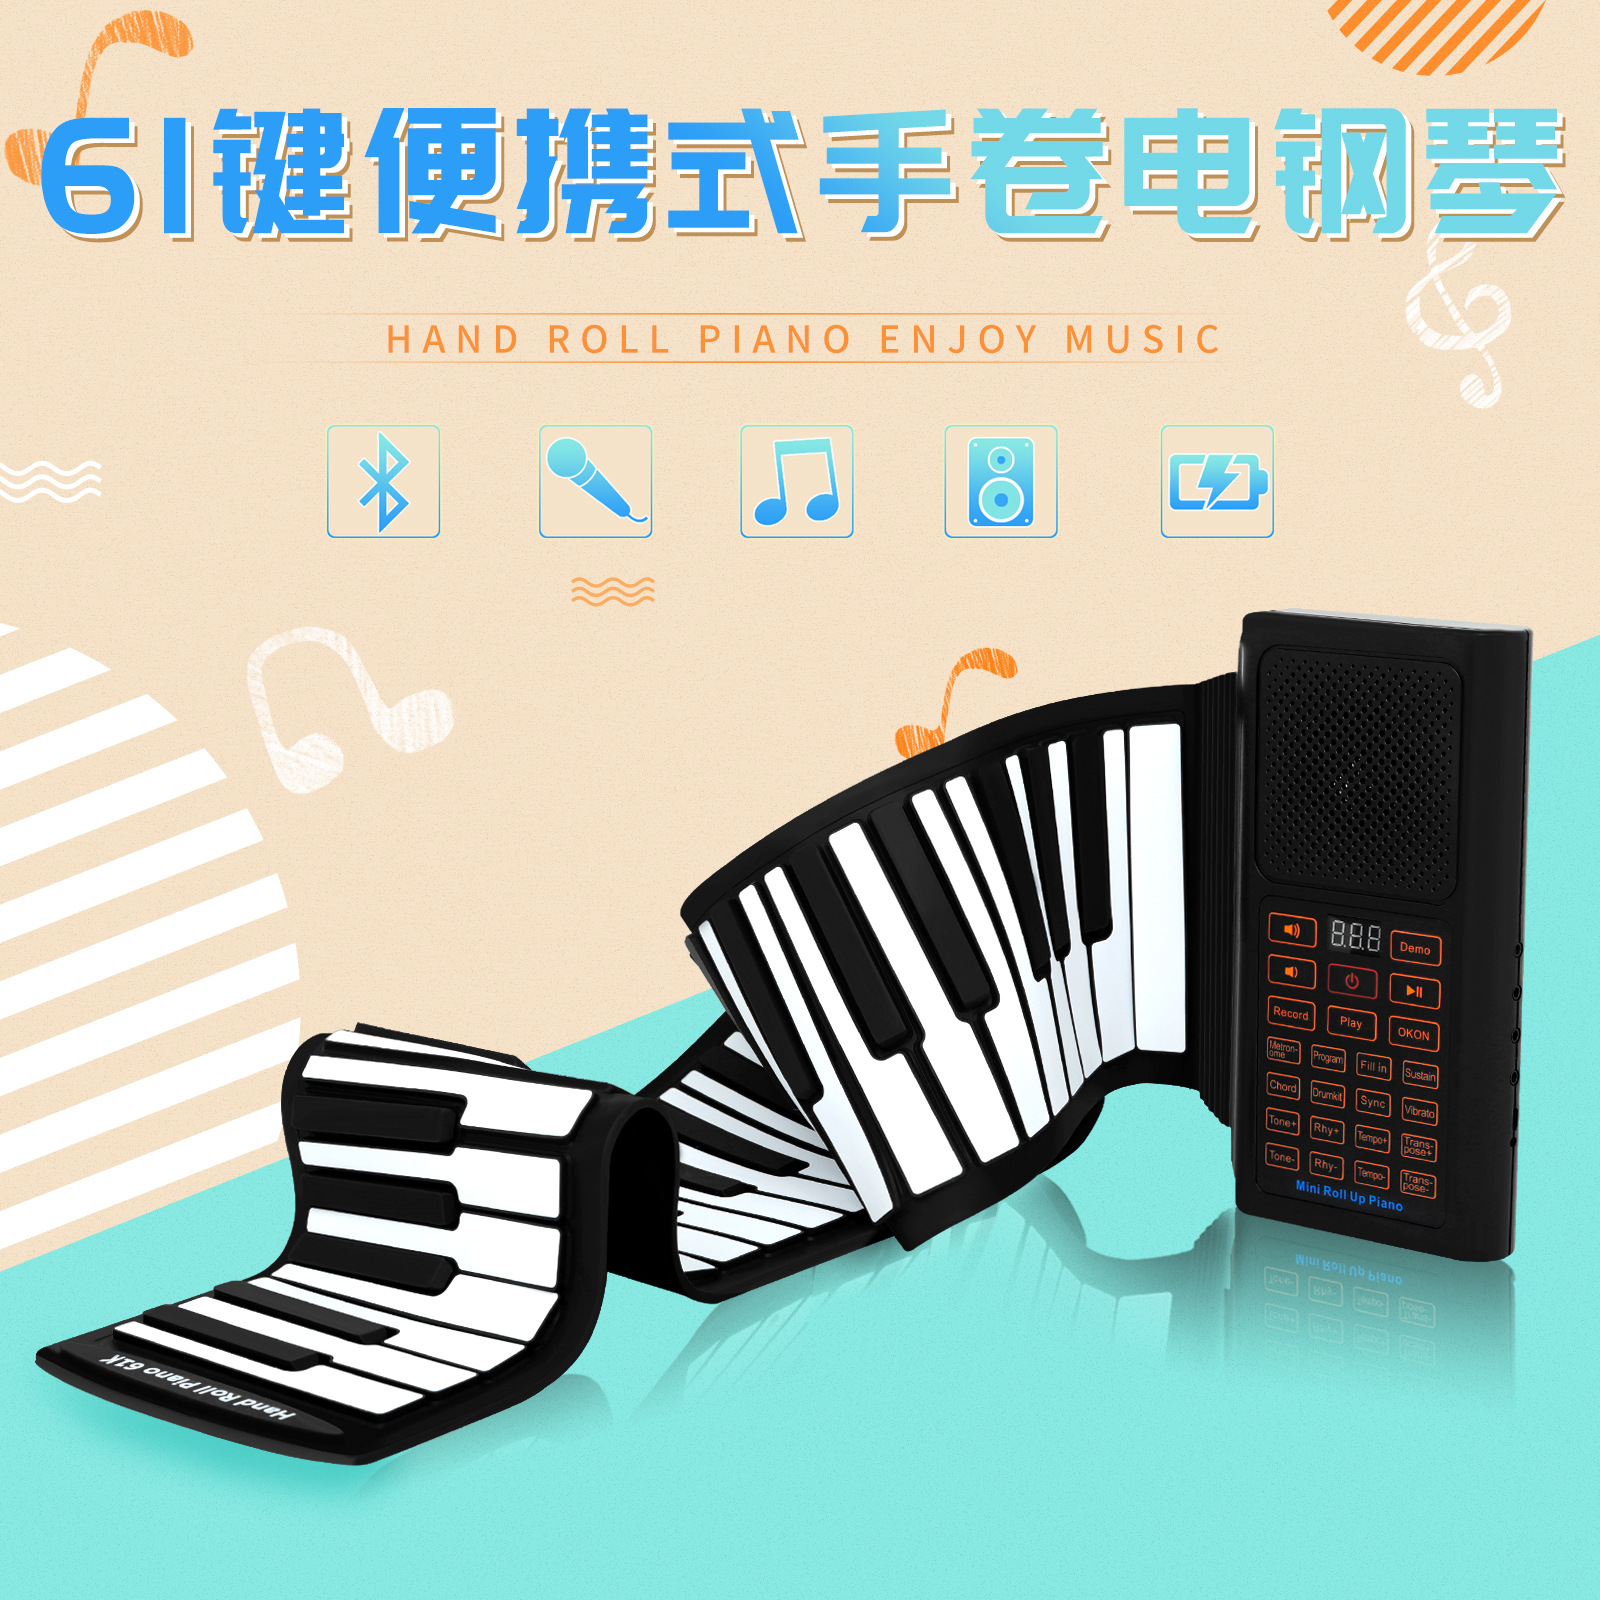 61键手卷电子琴便携式折叠硅胶手卷钢琴初学者练习手卷琴软钢琴